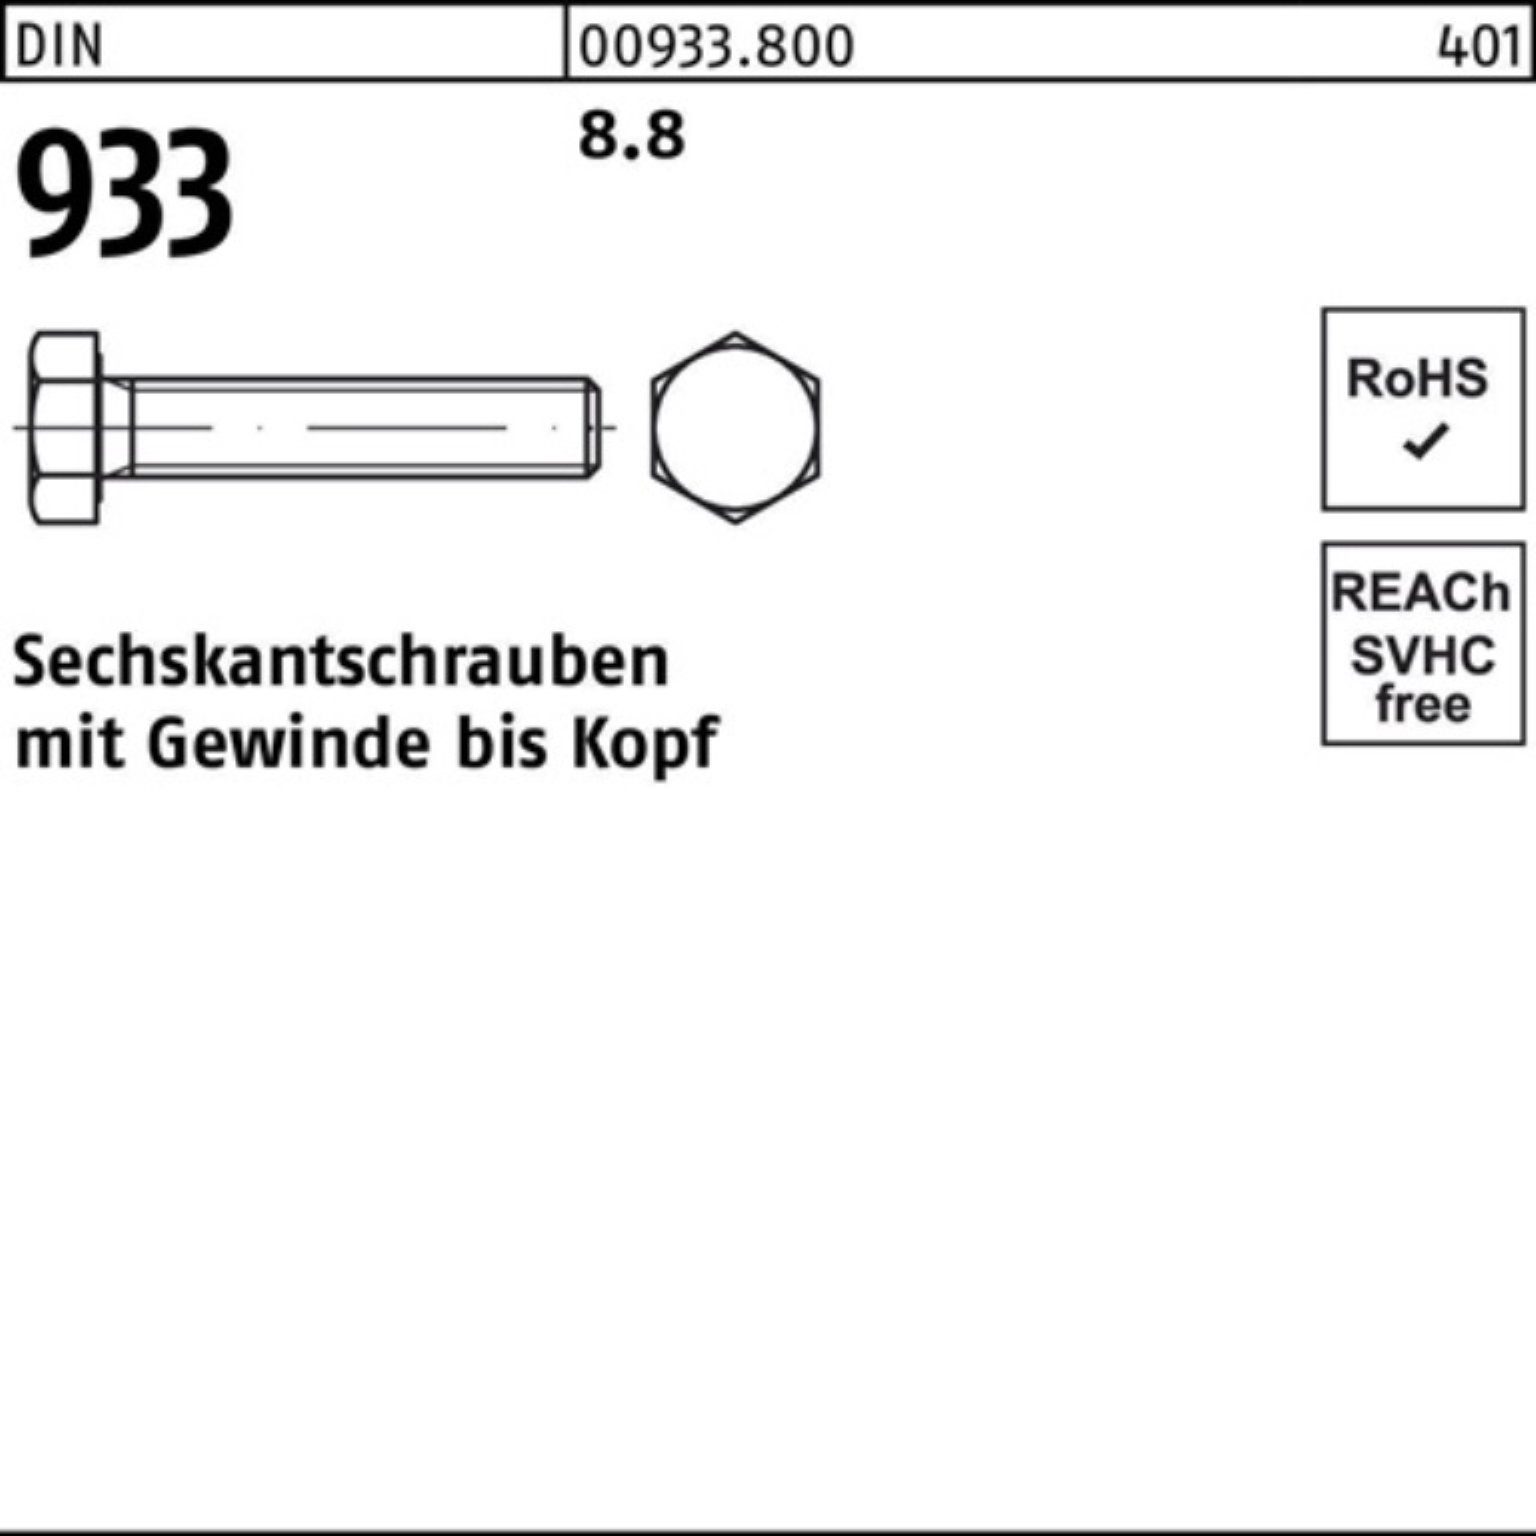 22 M8x DIN Stück 200 8.8 Pack Reyher 200er DIN Sechskantschraube Sechskantschraube 933 933 VG